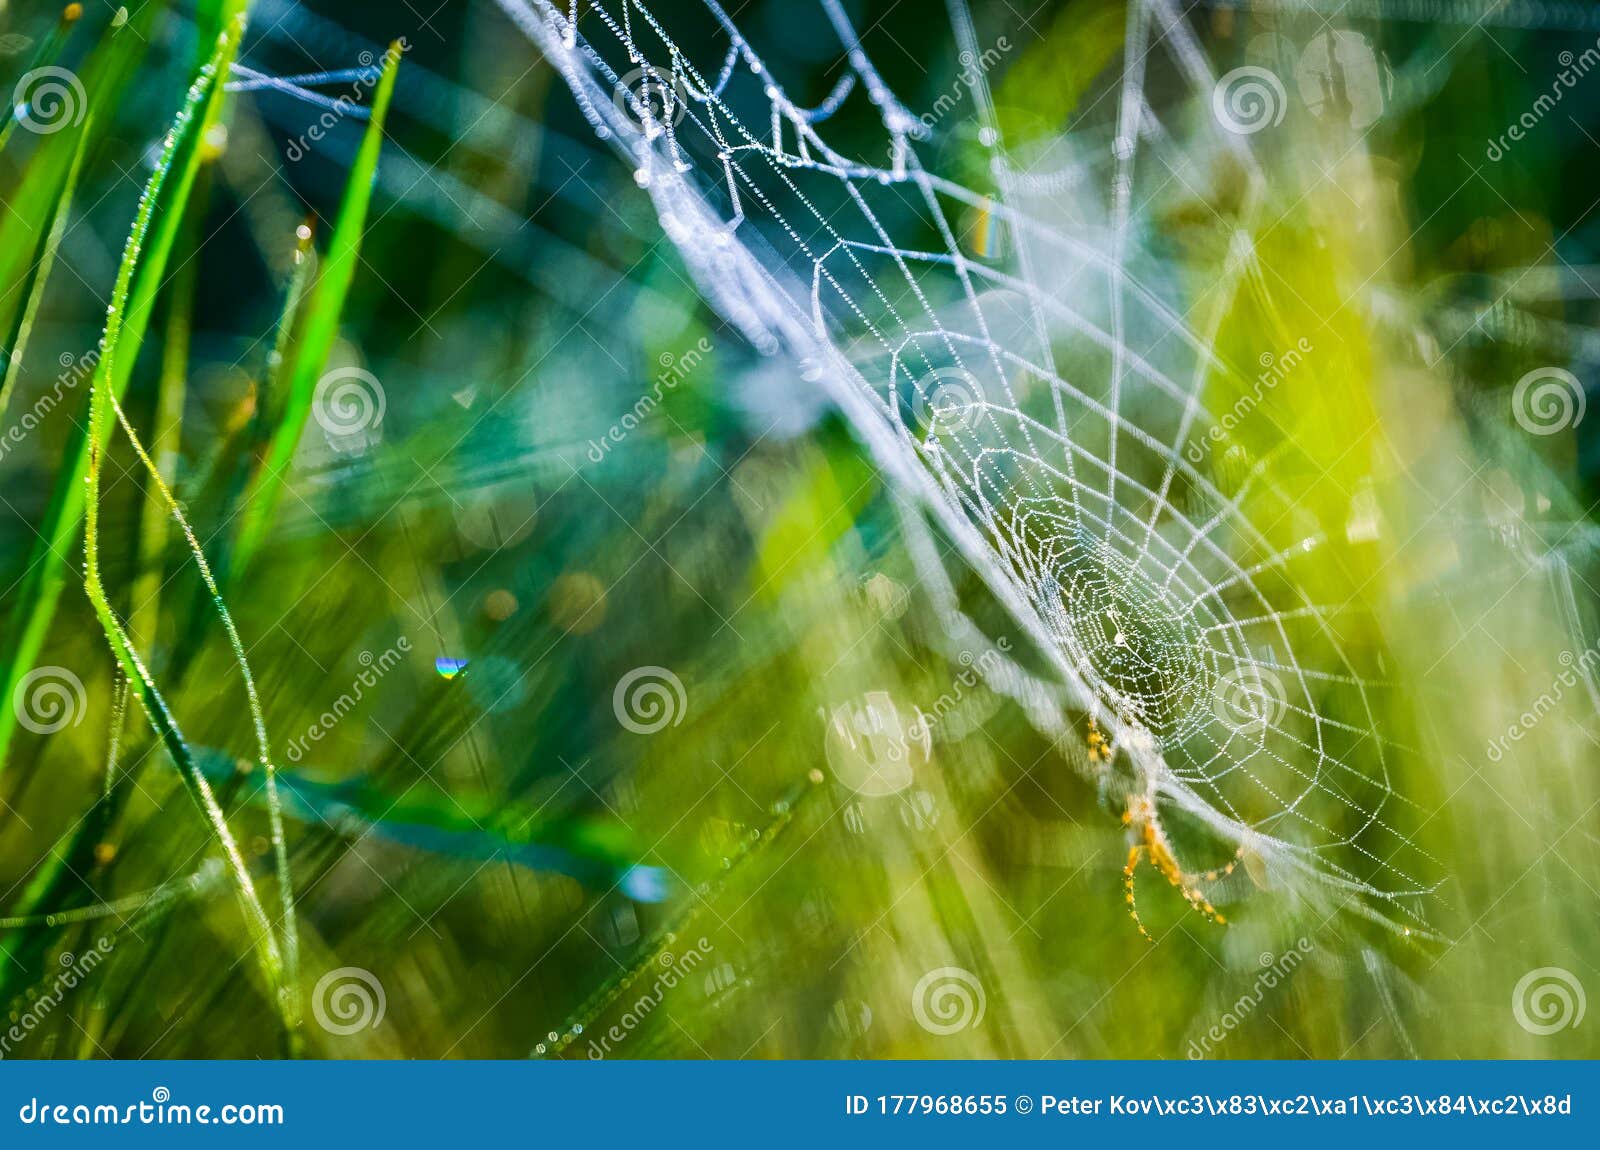 早上撒下的蜘蛛网夏日早晨的漂亮壁纸库存图片 图片包括有夏日早晨的漂亮壁纸 早上撒下的蜘蛛网